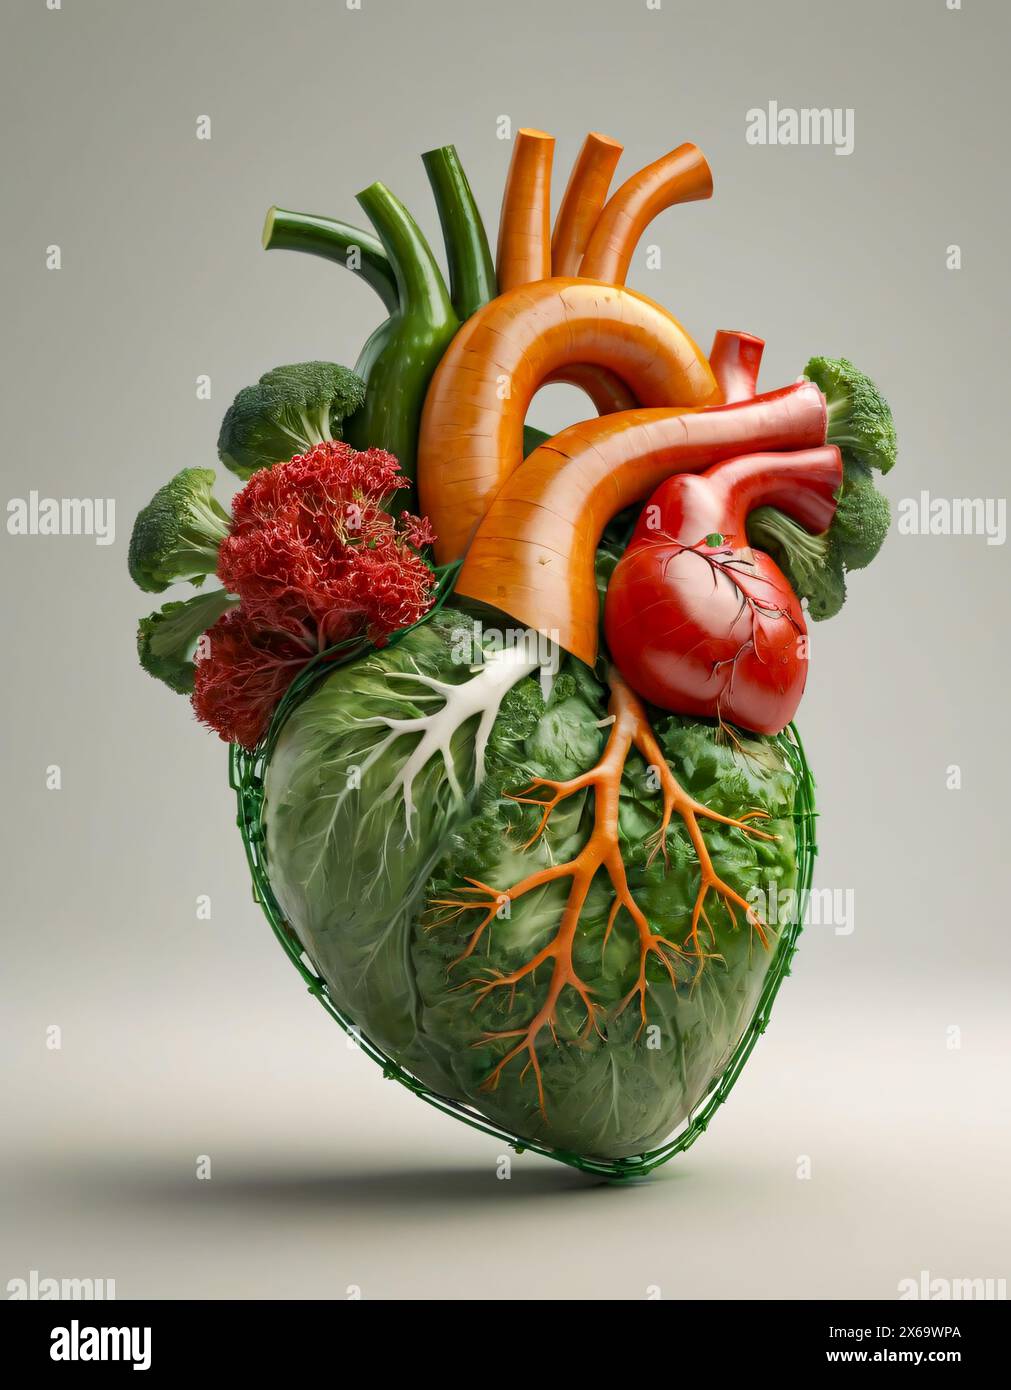 Menschliches Herz, realistische Darstellung. Gemüse und gesunde Lebensmittel. Stockfoto